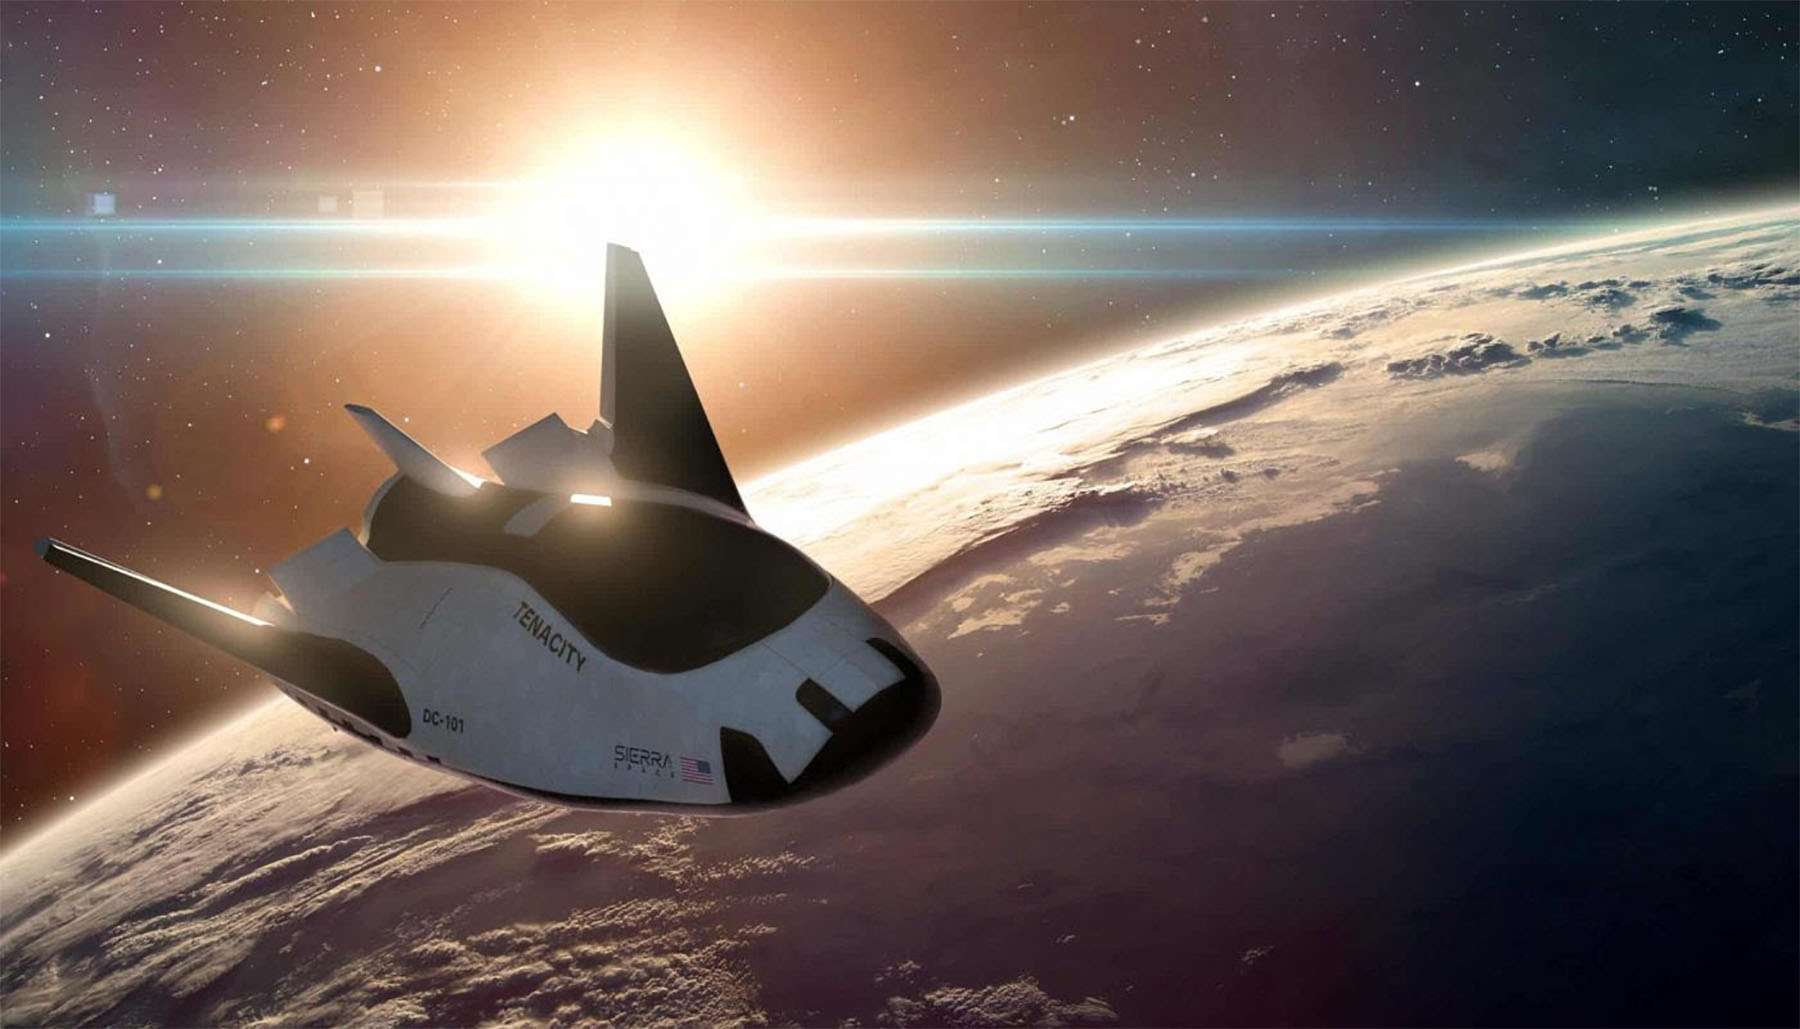 Notizie sullo spazioplano Dream Chaser che dovrebbe essere lanciato quest’anno